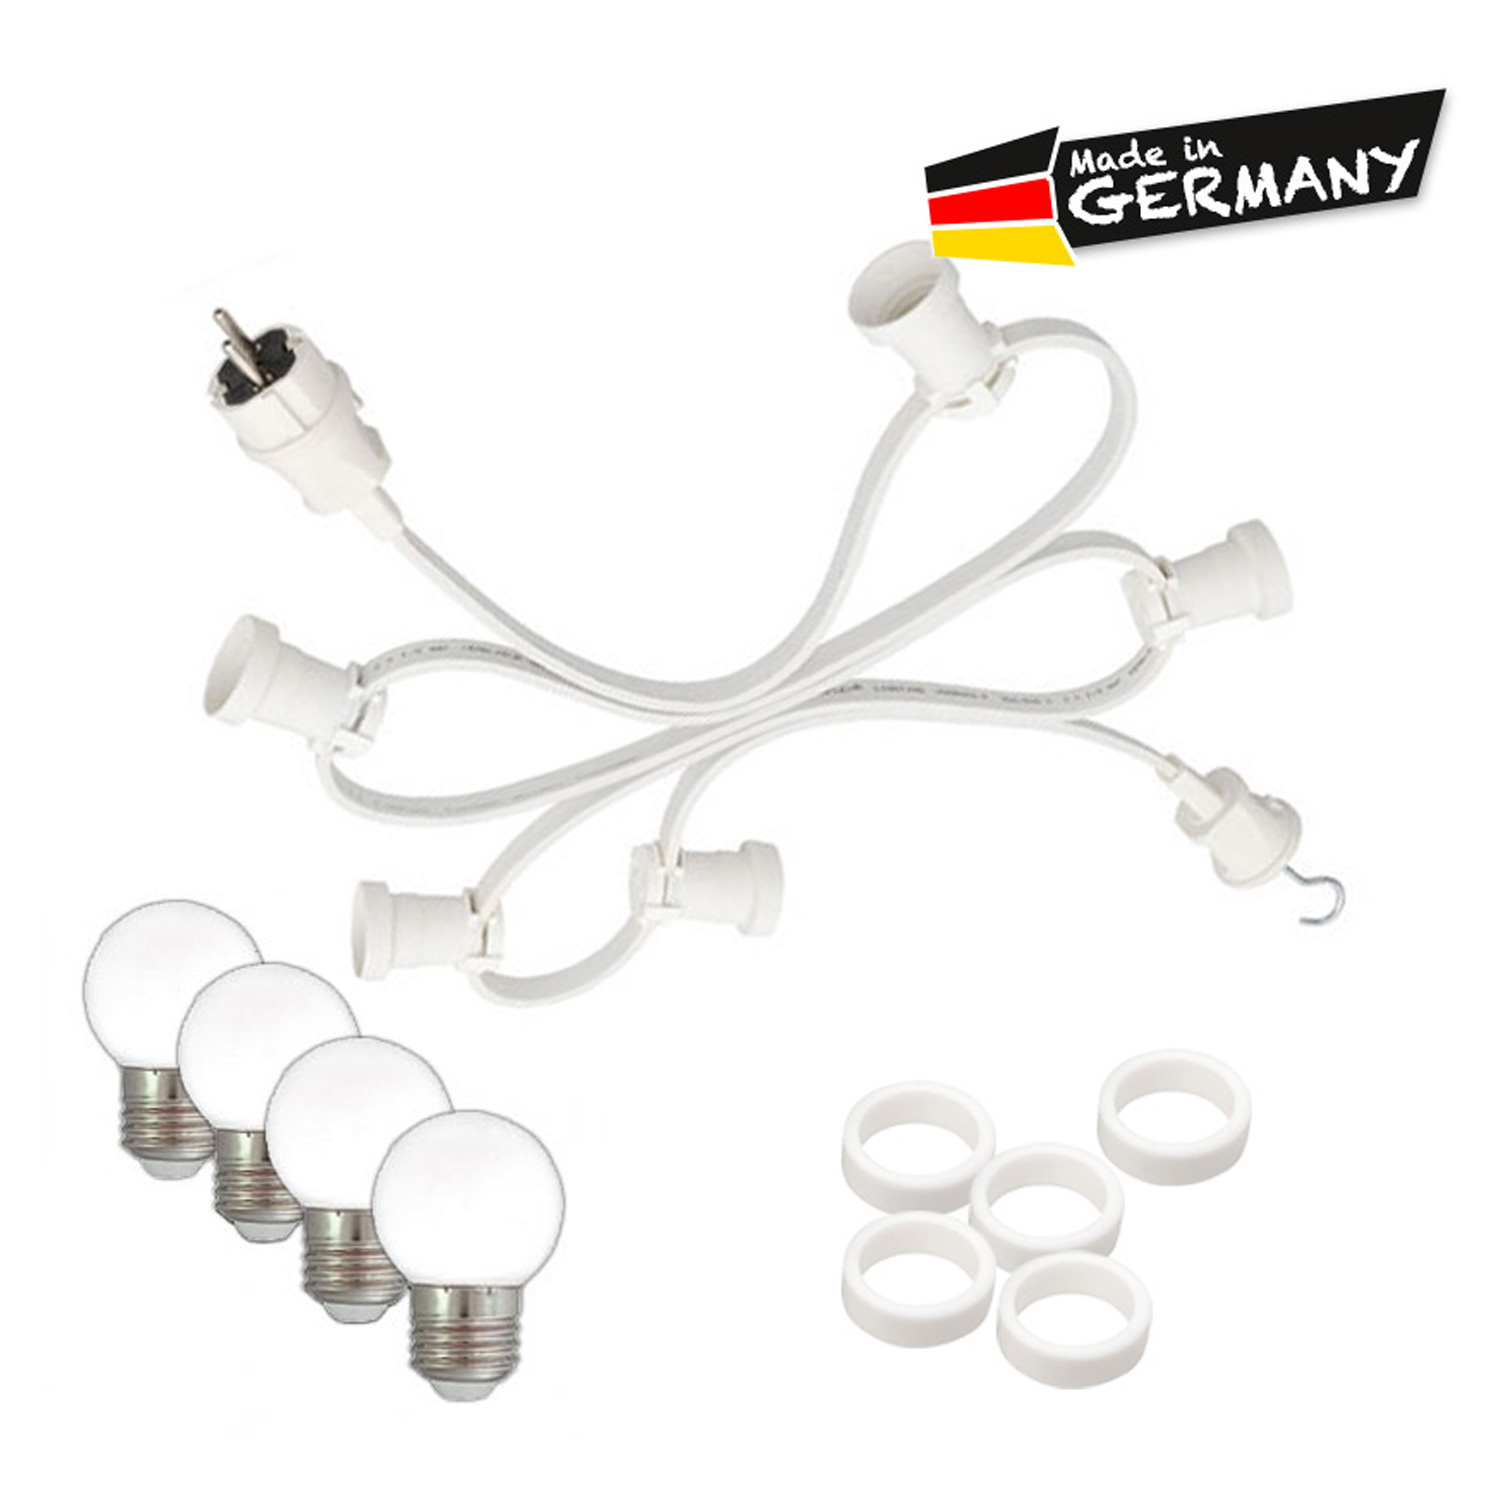 Illu-/Partylichterkette 40m - Außenlichterkette - Made in Germany - 60 x warmweiße LED Kugellampen